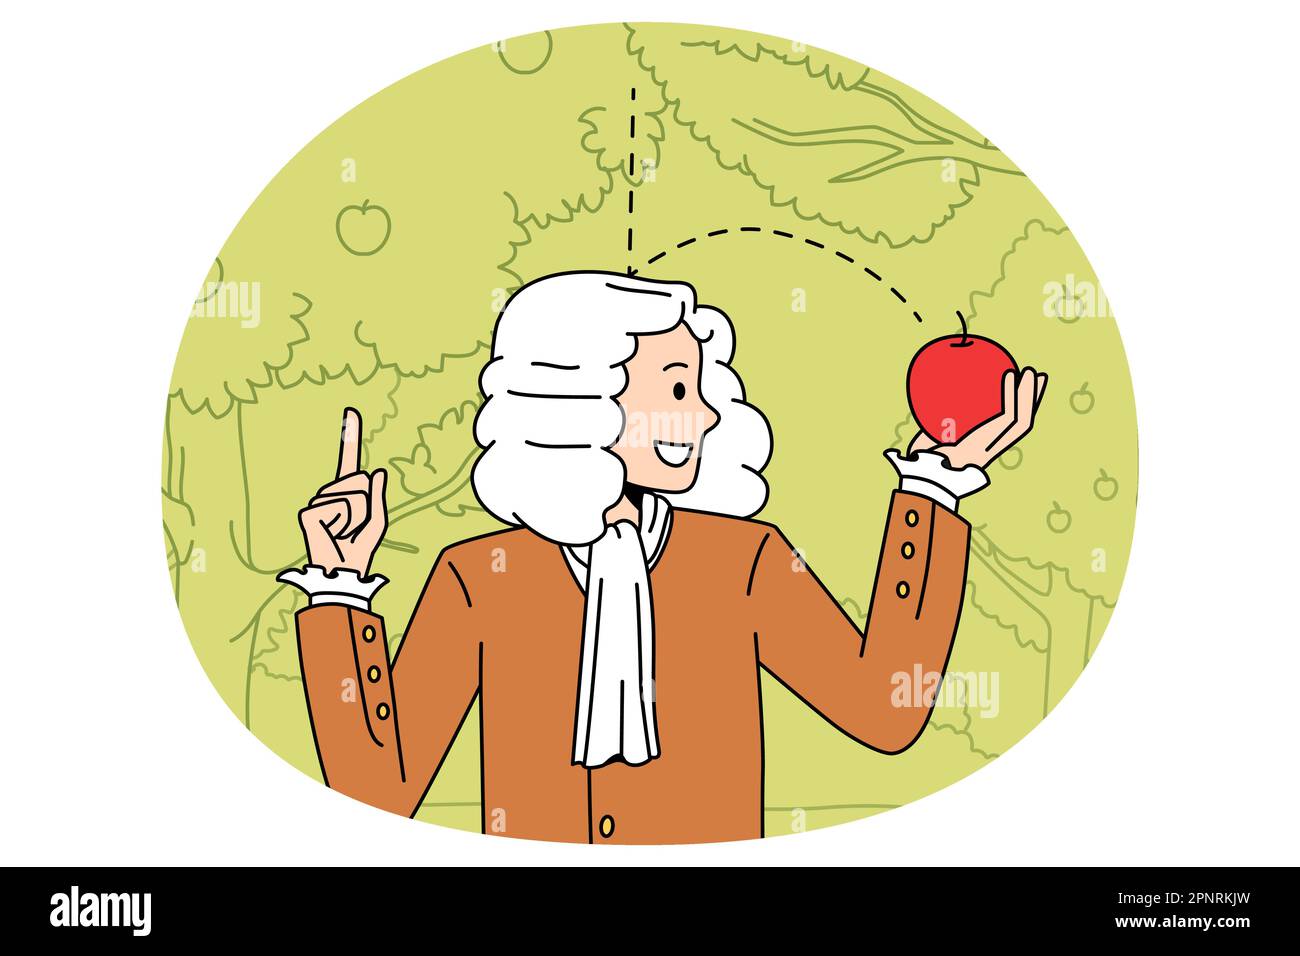 Wissenschaft und körperliche Erfahrung Konzept. Sir Isaac Newton Wissenschaftler stehen und erkunden die Schwerkraft mit rot gefallener Apfel in den Händen Vektor-Illustration Stock Vektor